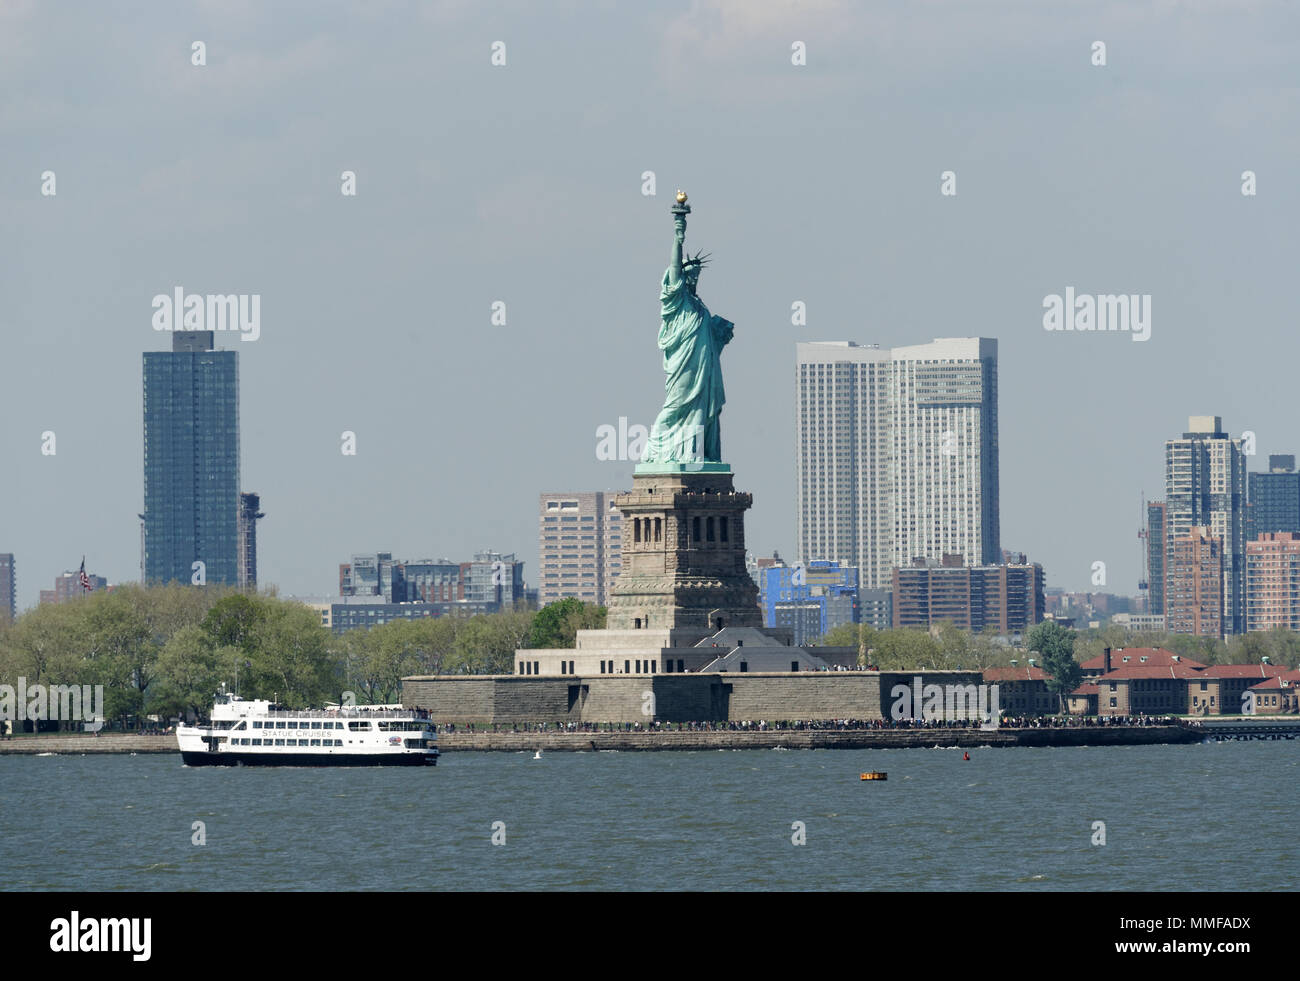 Die Freiheitsstatue auf Liberty Island ist ein New Yorker Hafen Wahrzeichen. Es wurde von Frédéric Auguste Bartholdi von Gustav Eiffel entworfen und entwickelt. Stockfoto